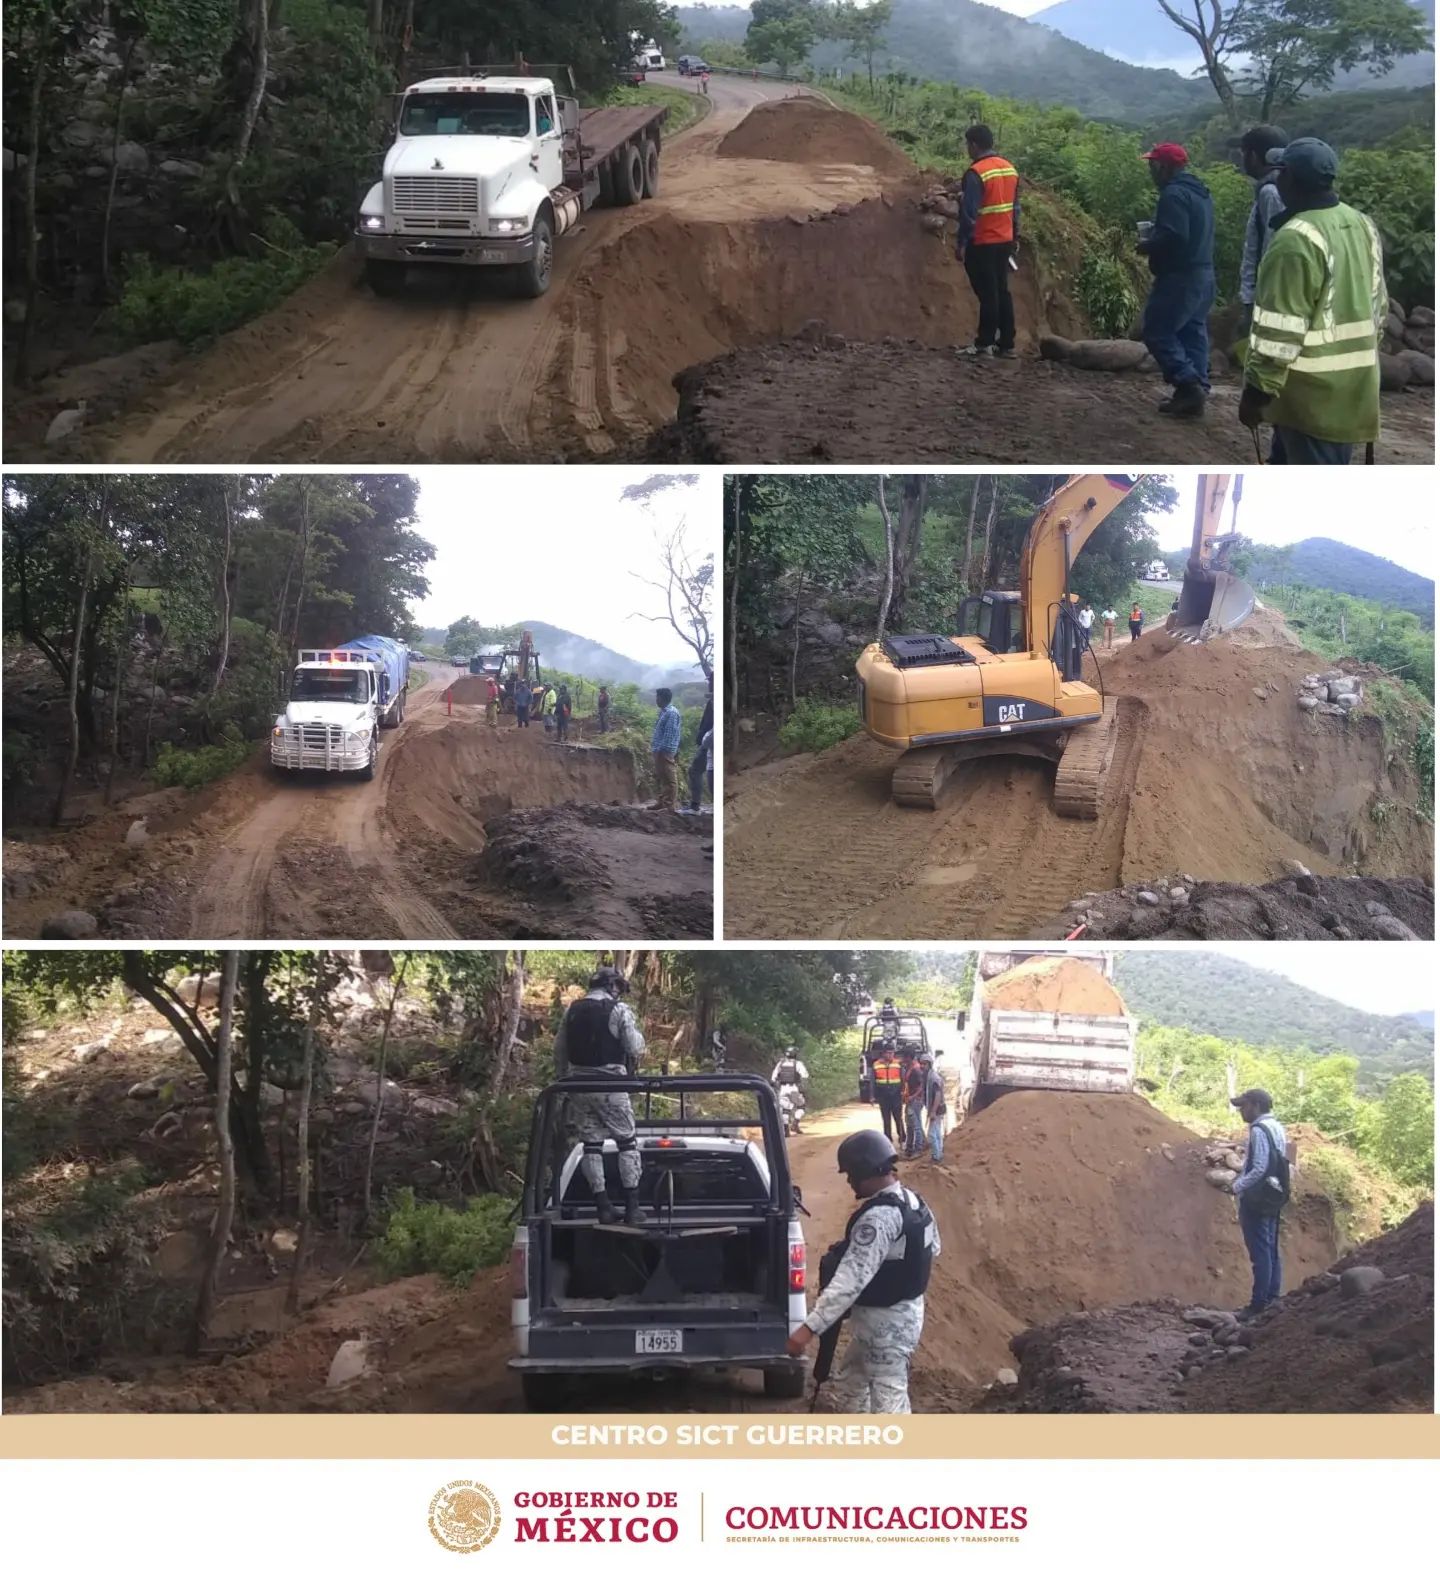 La SICT repara daños causados por las lluvias en la Altamirano-Zihuatanejo